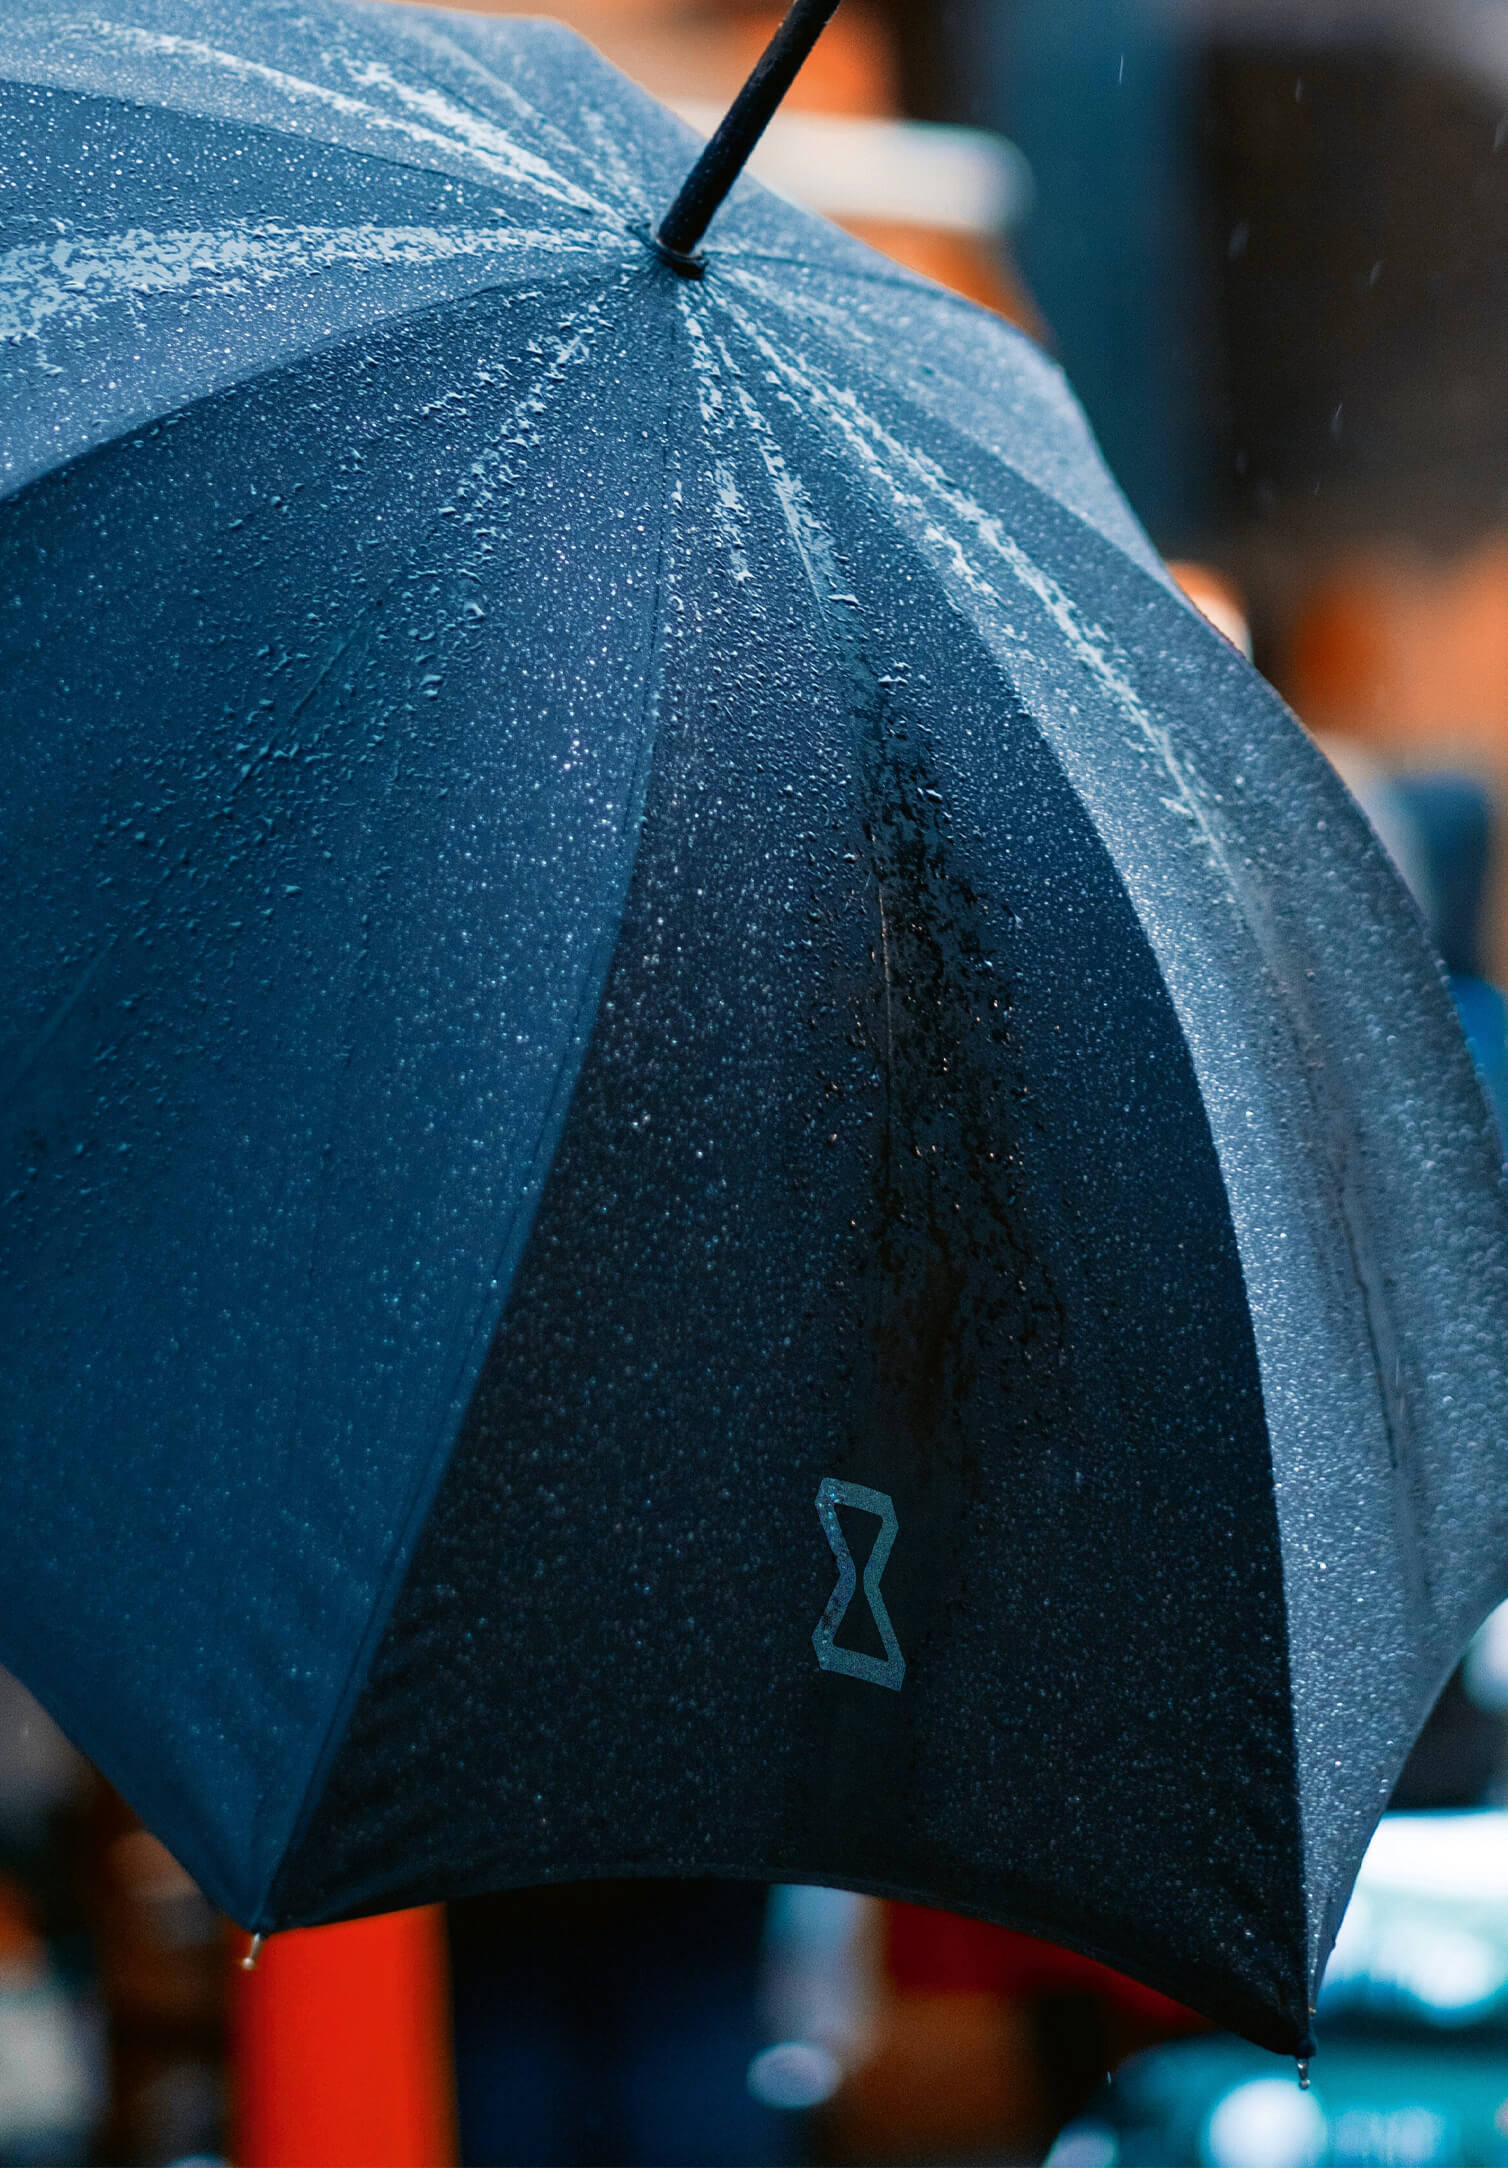 Regenschirm mit Öffnungsautomatik - Ø 108cm - schwarz